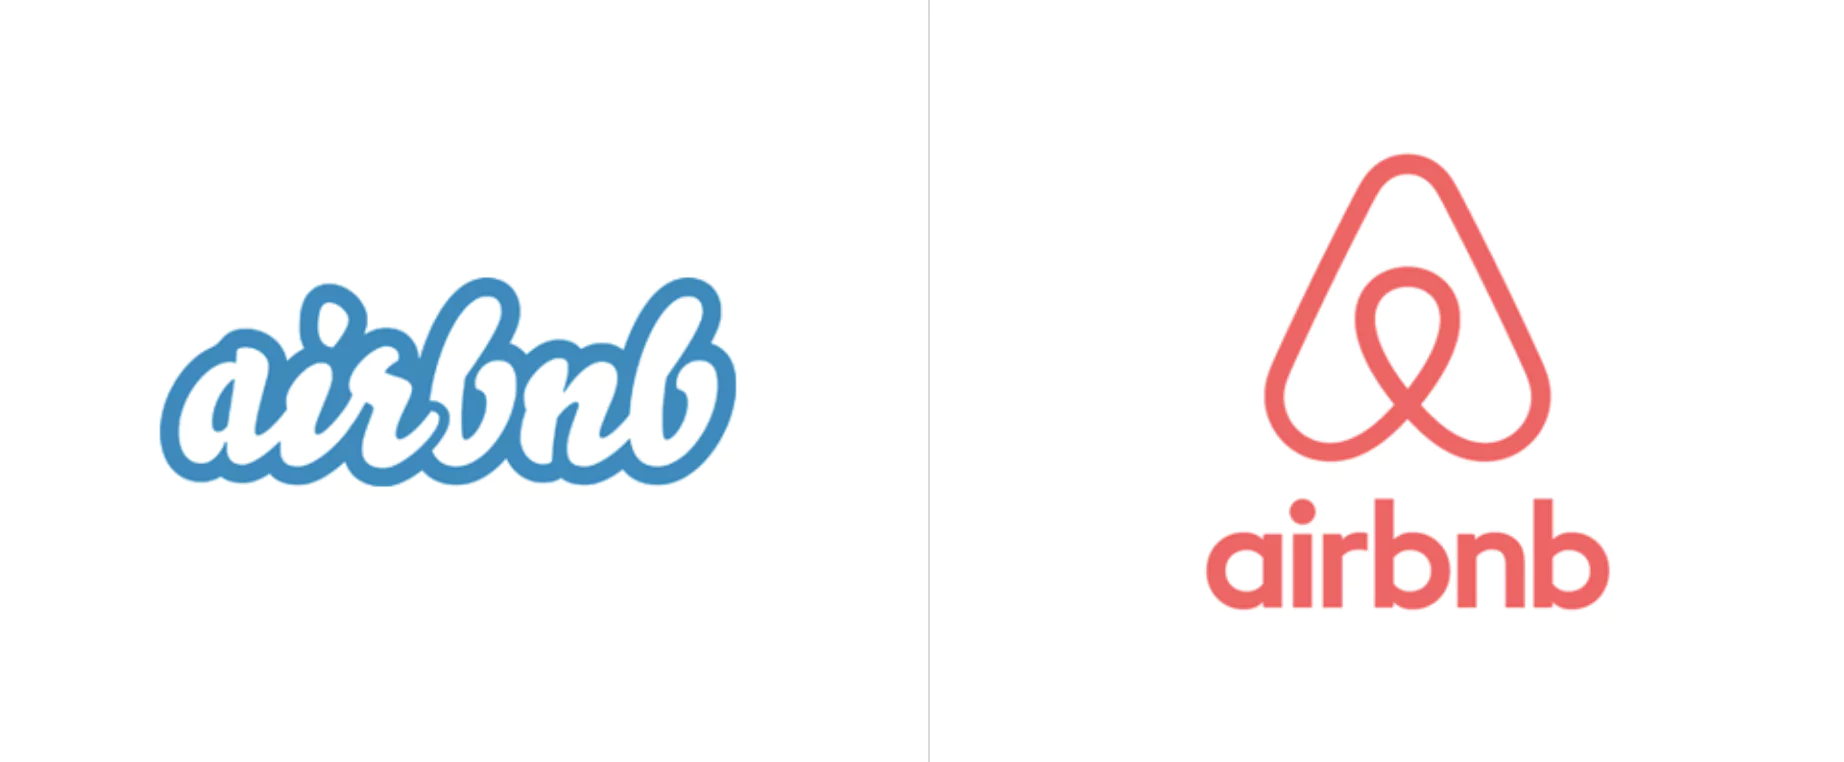 에어비앤비 로고 비교: 왼쪽의 기존 흰색/파란색 로고, 오른쪽의 새로운 분홍색/빨간색 로고와 하트 하우스 기호